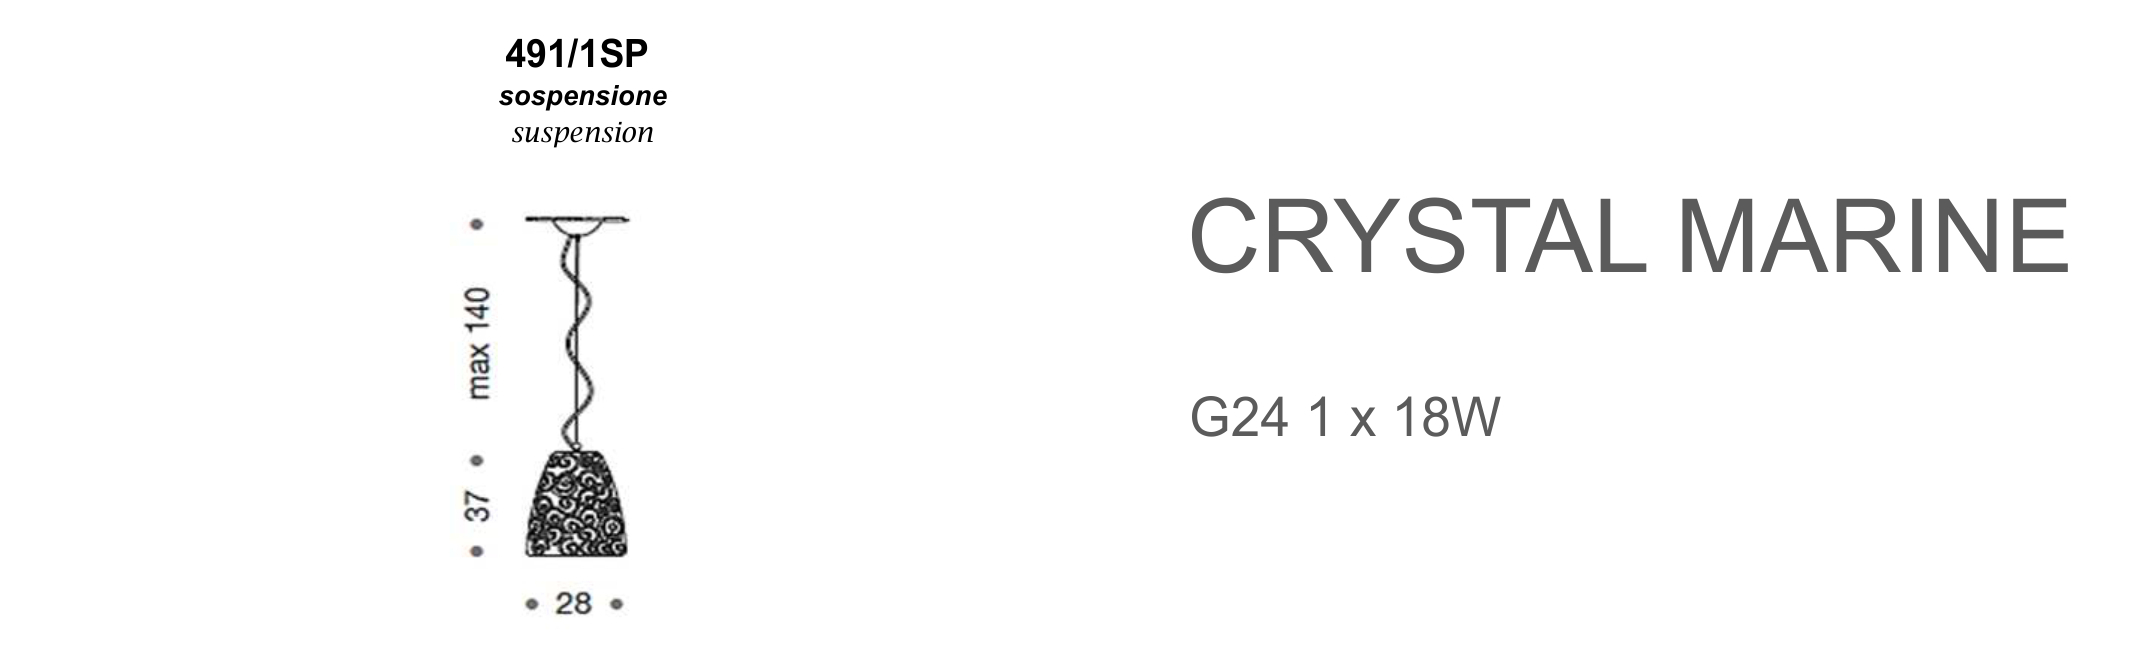 Crystal Marine 491/1SP